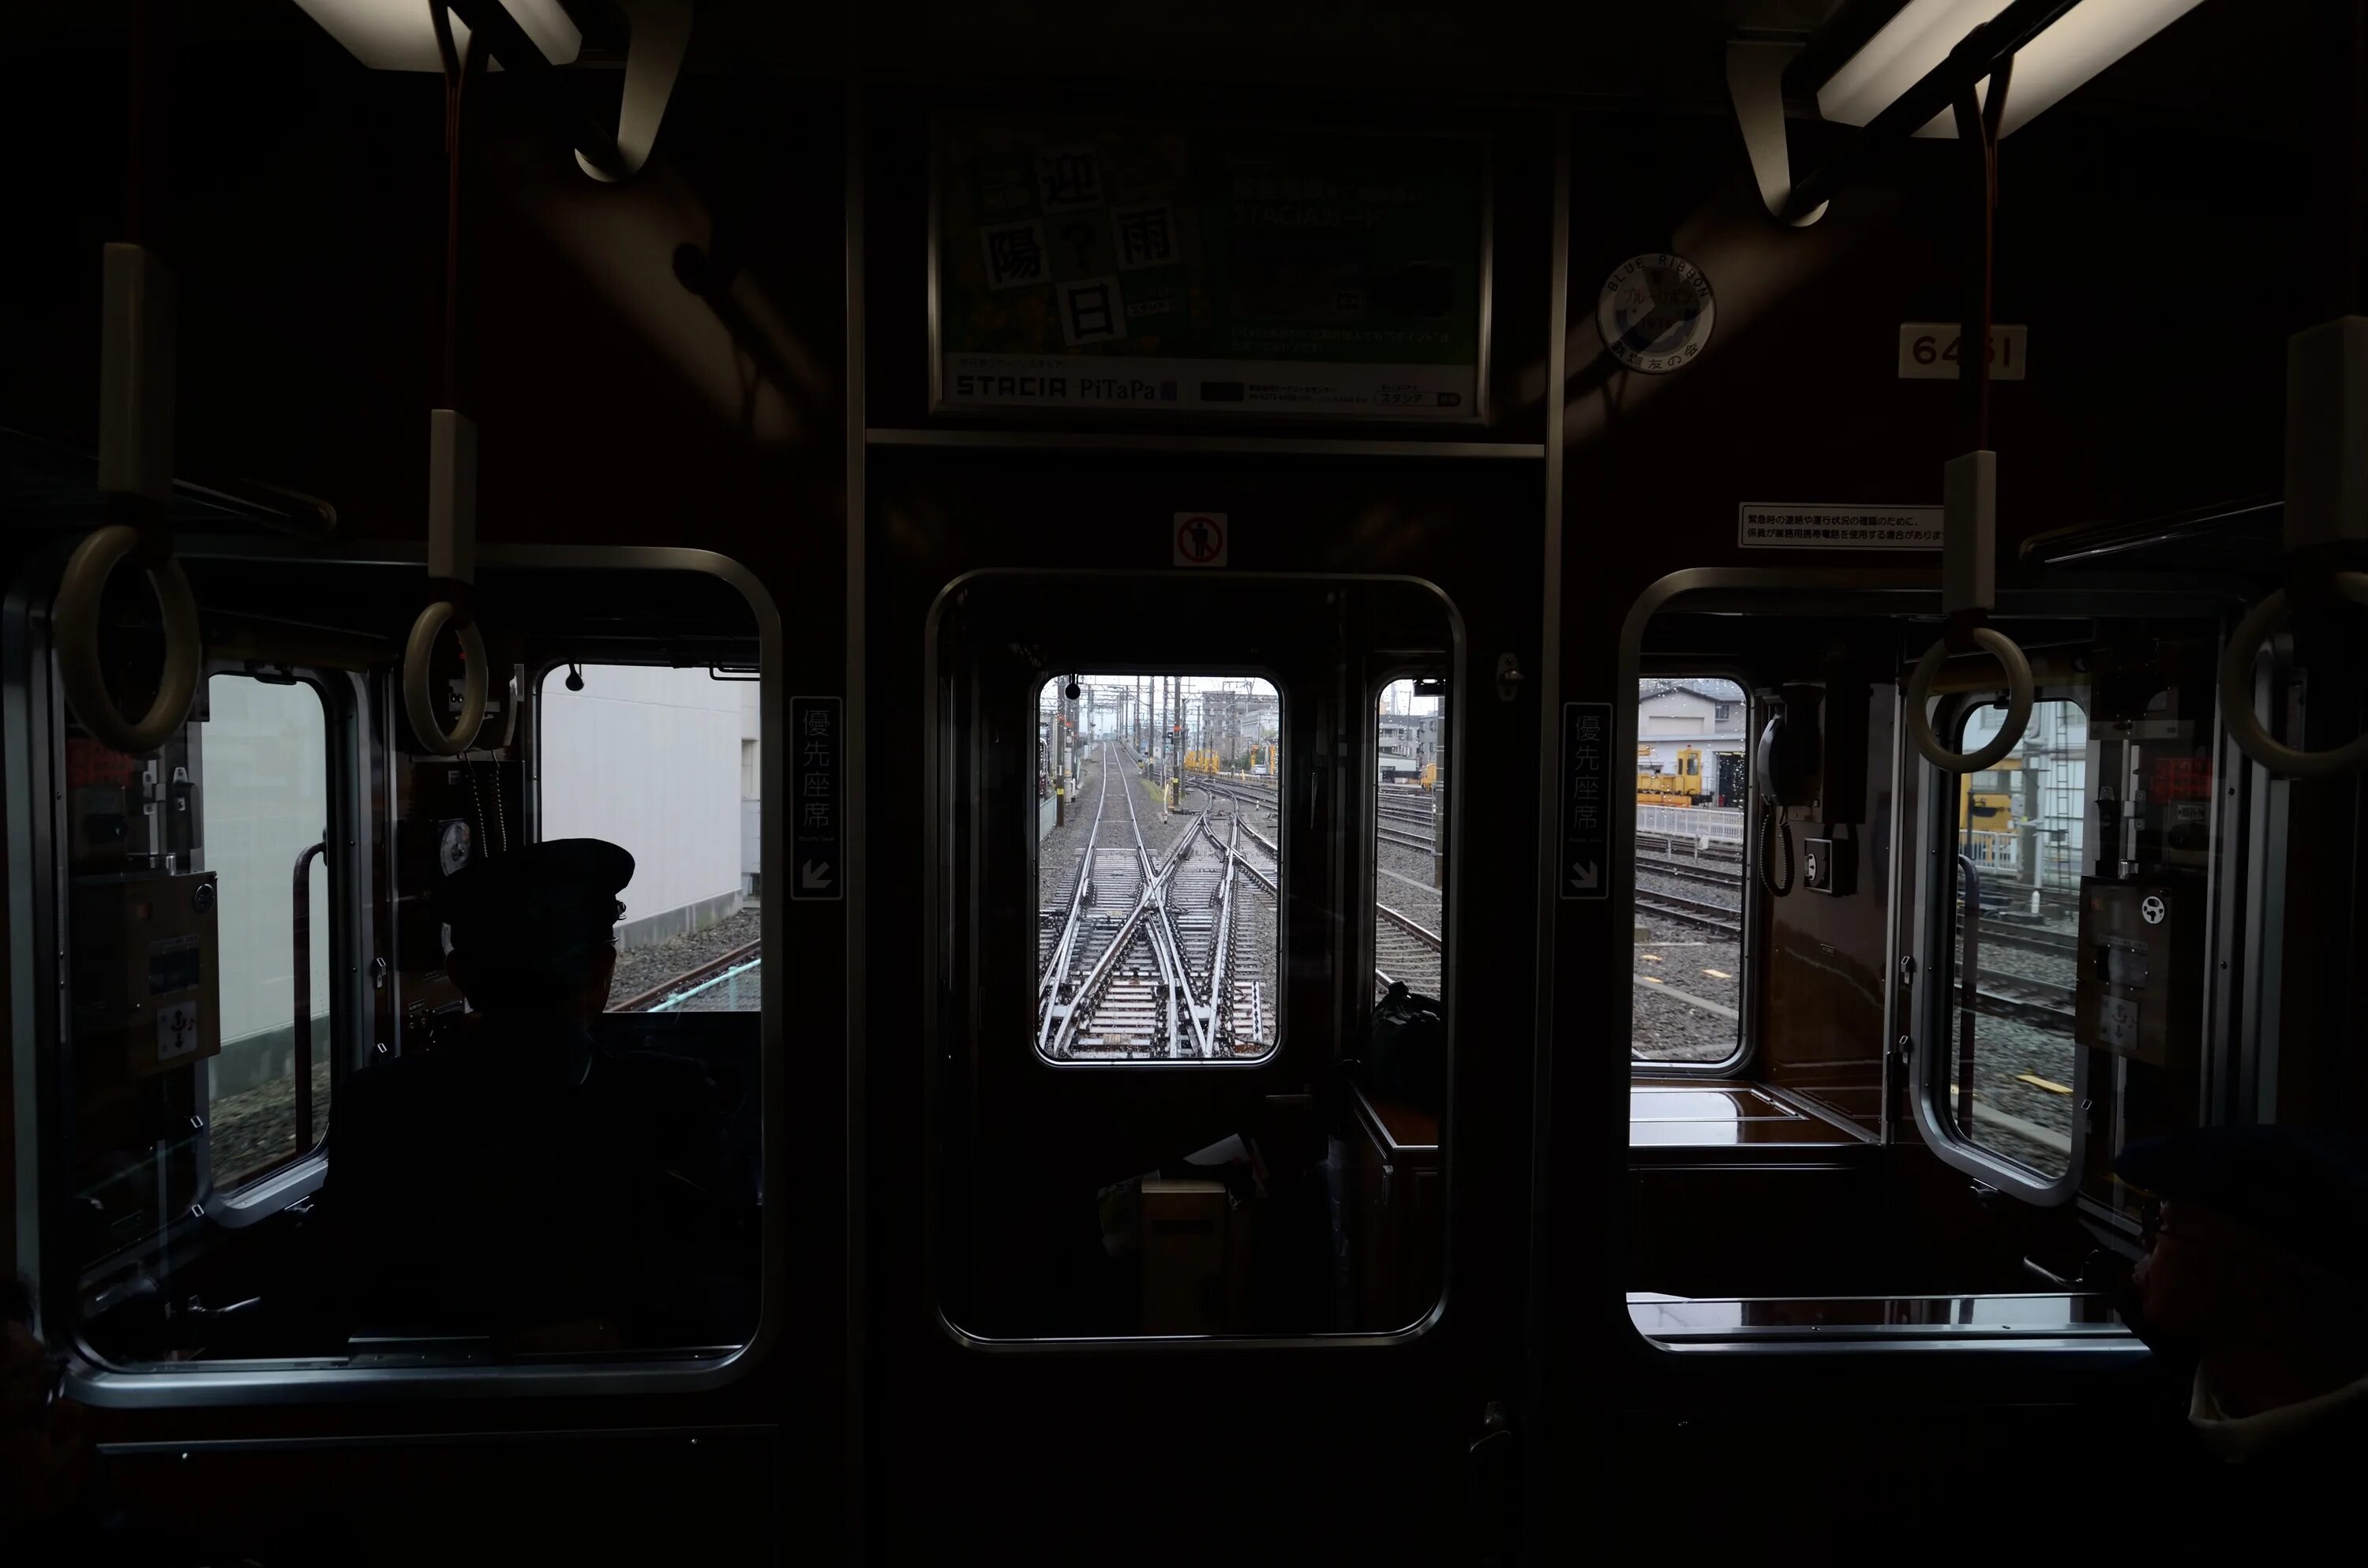 Поезд в темноте. Окно вагона метро. Вагон метро в темноте. Вид из окна вагона метро. Поезд метро в темноте.